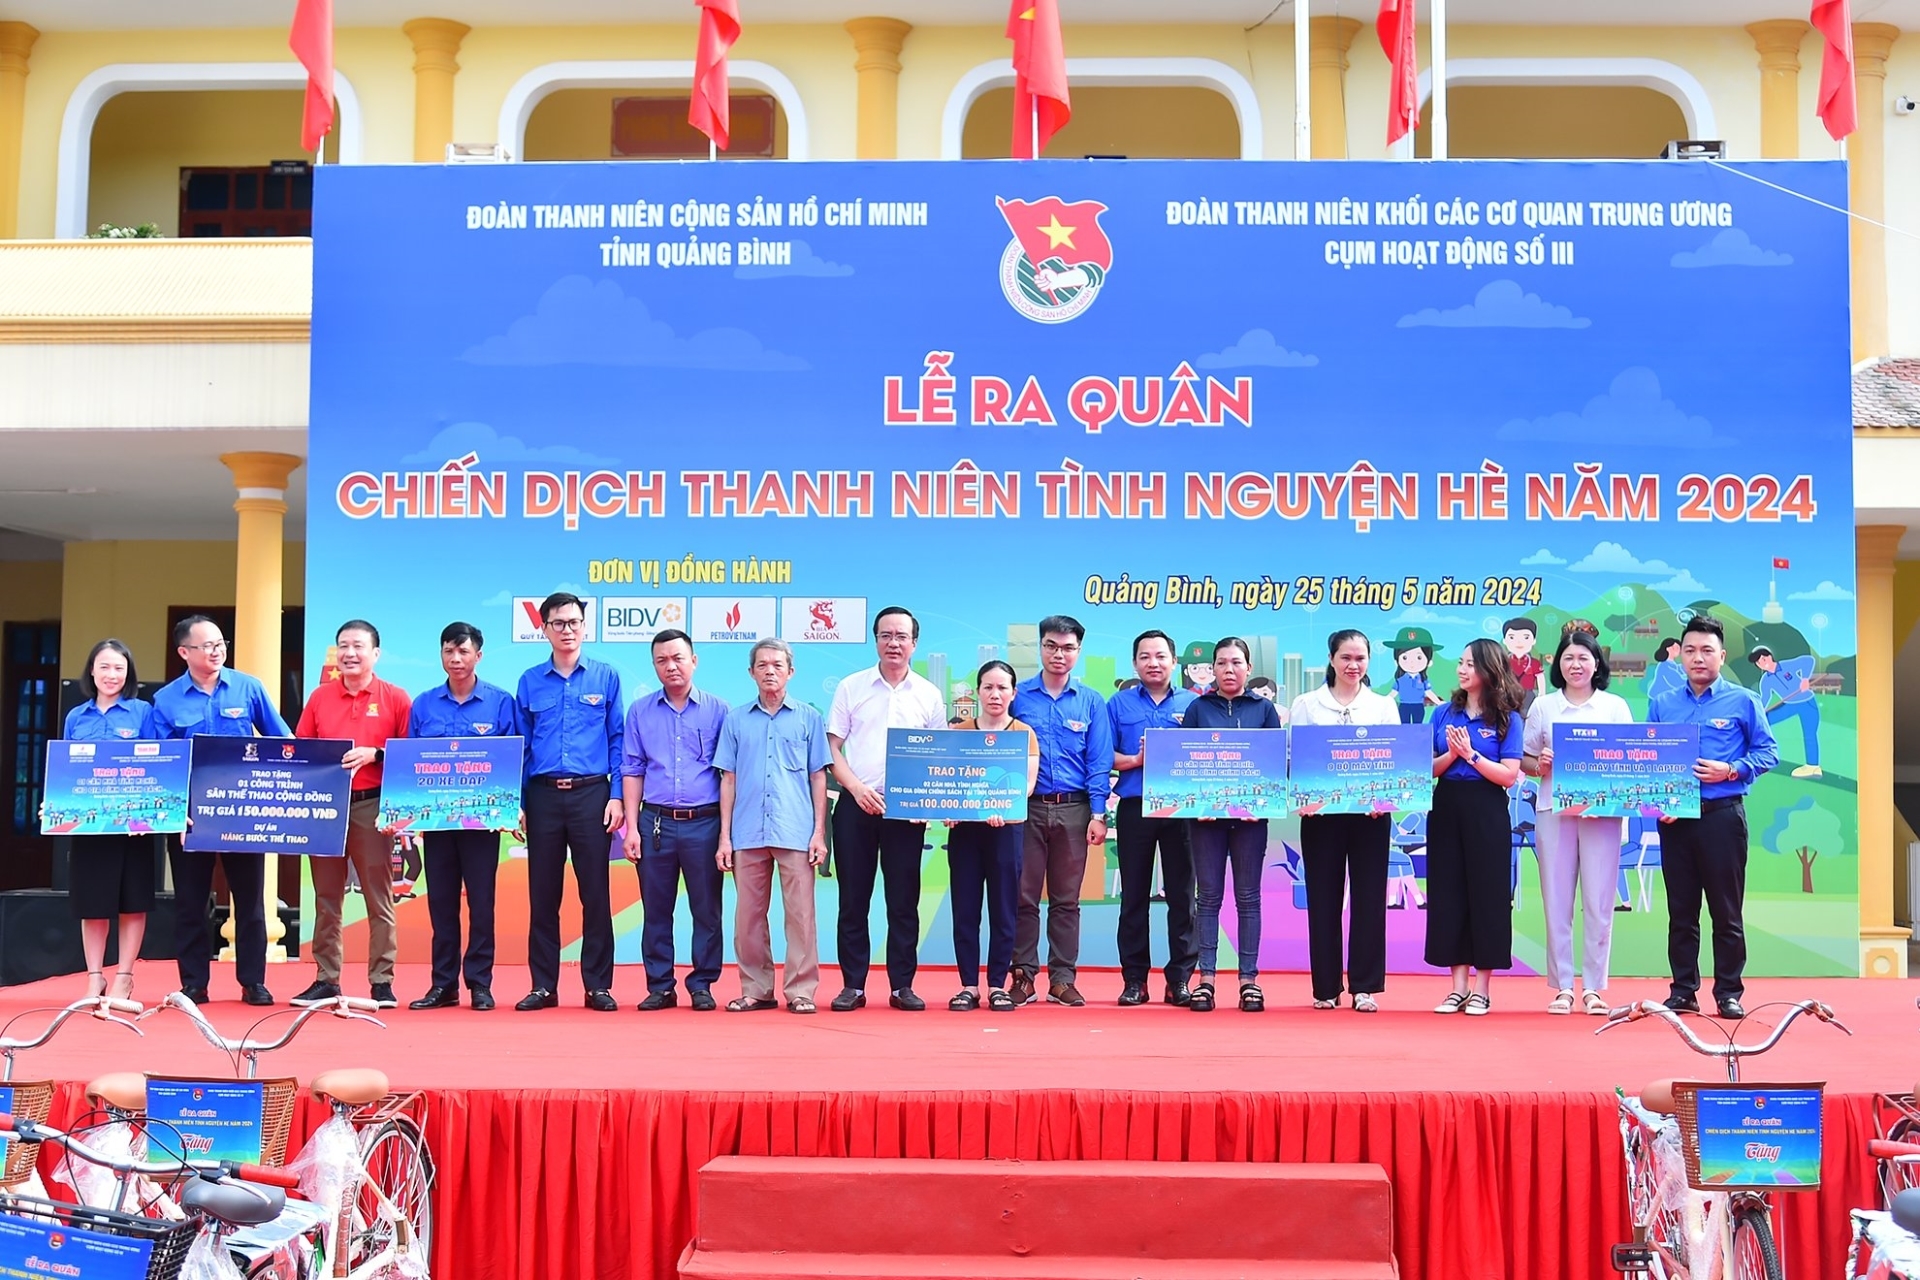 Đại diện lãnh đạo các đơn vị thuộc Cụm hoạt động số III - Đoàn khối Các cơ quan Trung ương và các nhà tài trợ trao biển tượng trưng hỗ trợ các hoạt động an sinh xã hội vì cuộc sống cộng đồng tại xã Quảng Tiến.